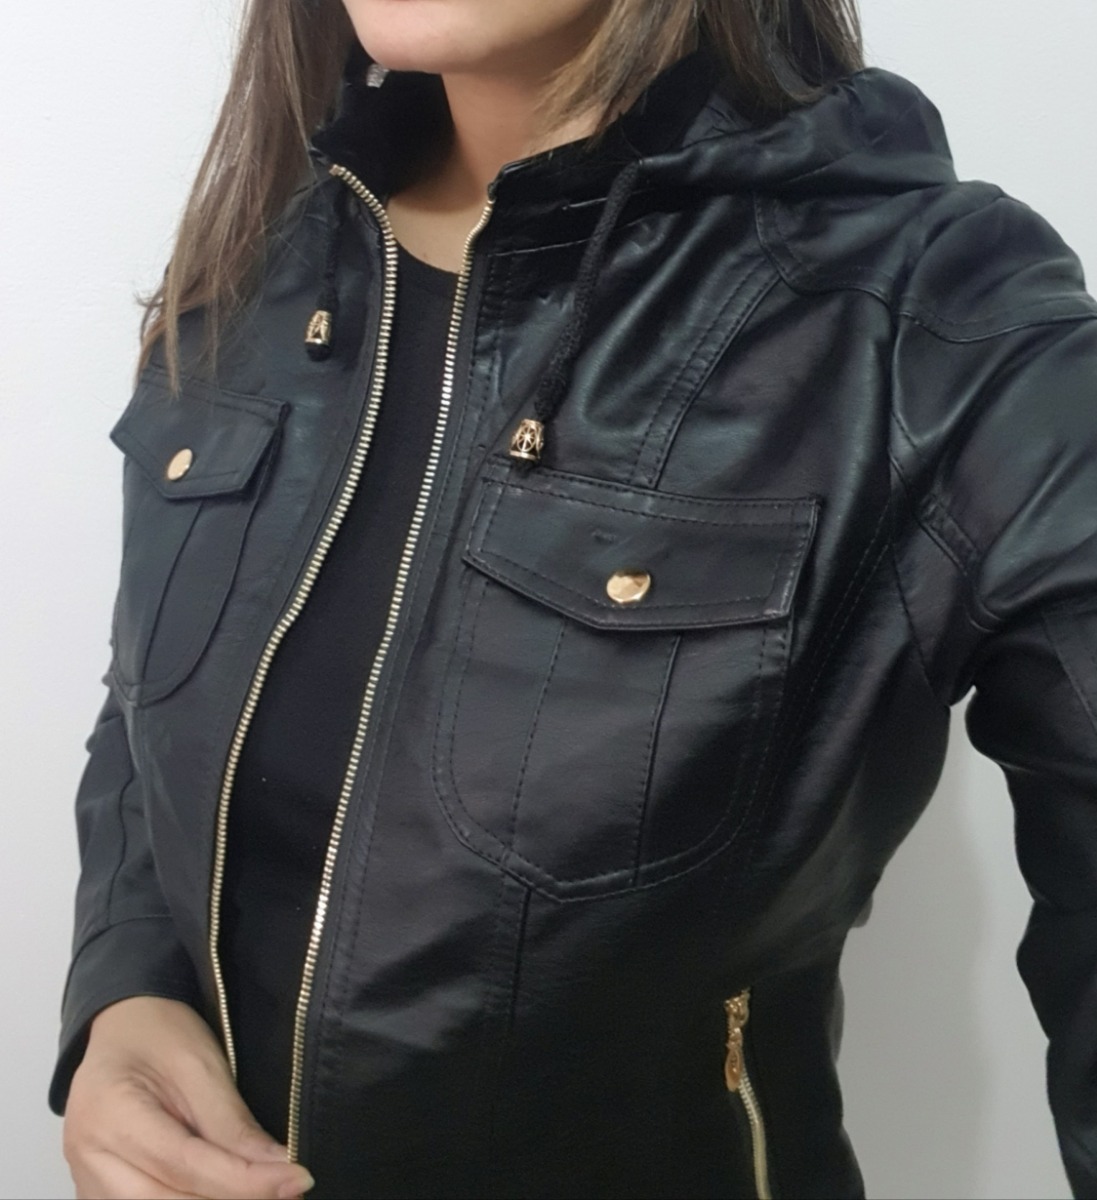 jaqueta feminina com capuz removivel